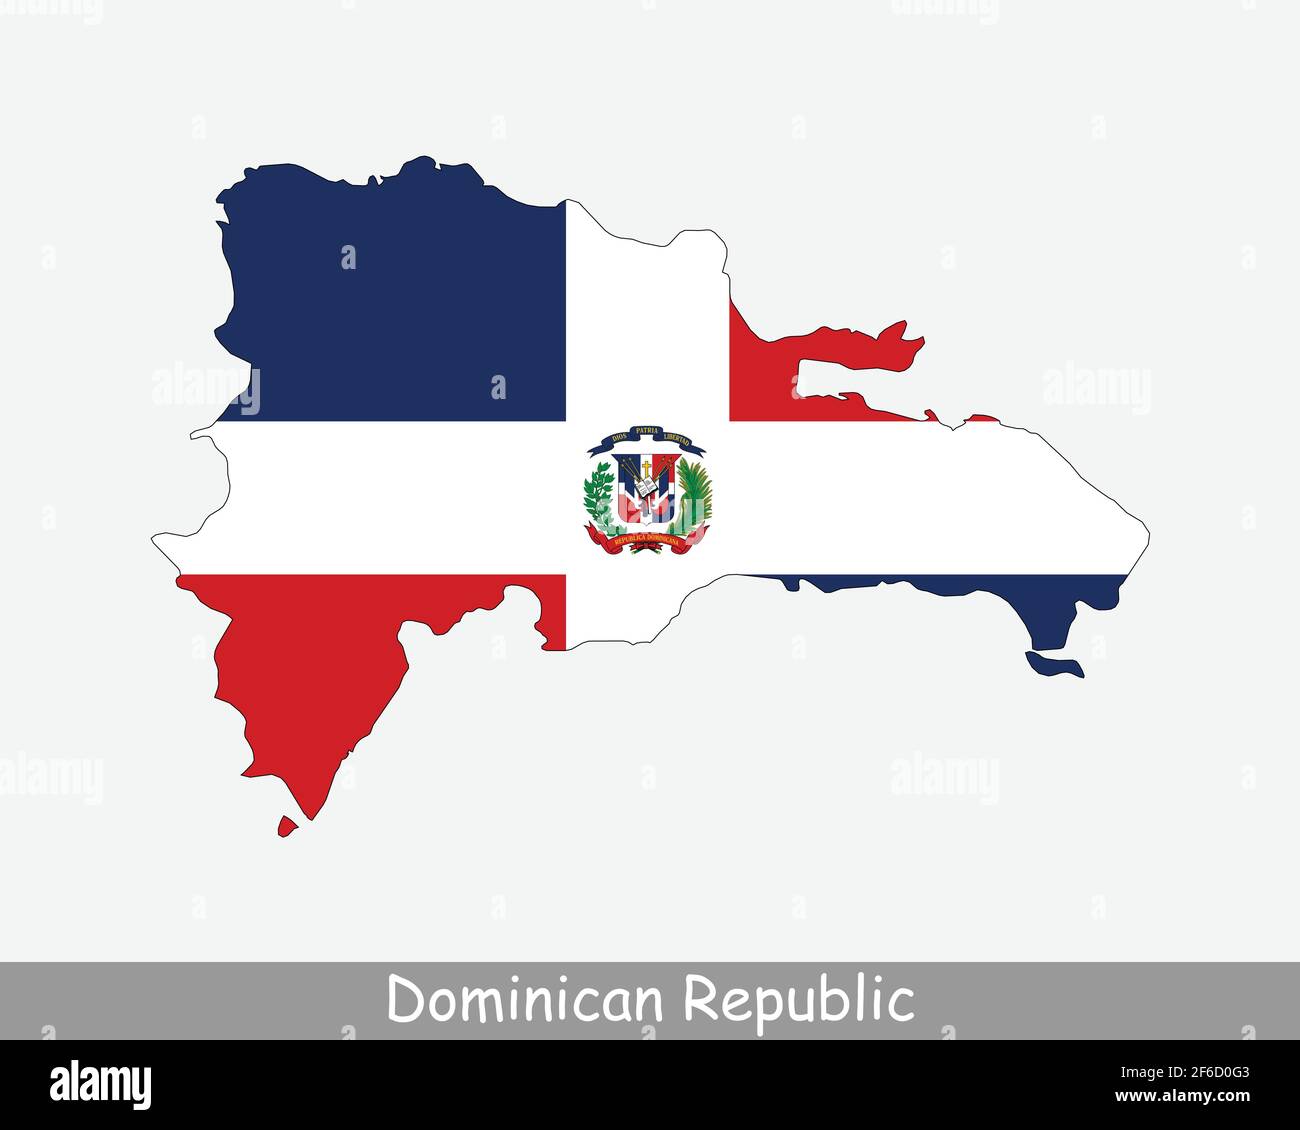 Bandiera della Repubblica Dominicana. Mappa della Repubblica Dominicana con la bandiera nazionale dominicana isolata su sfondo bianco. Illustrazione vettoriale. Illustrazione Vettoriale